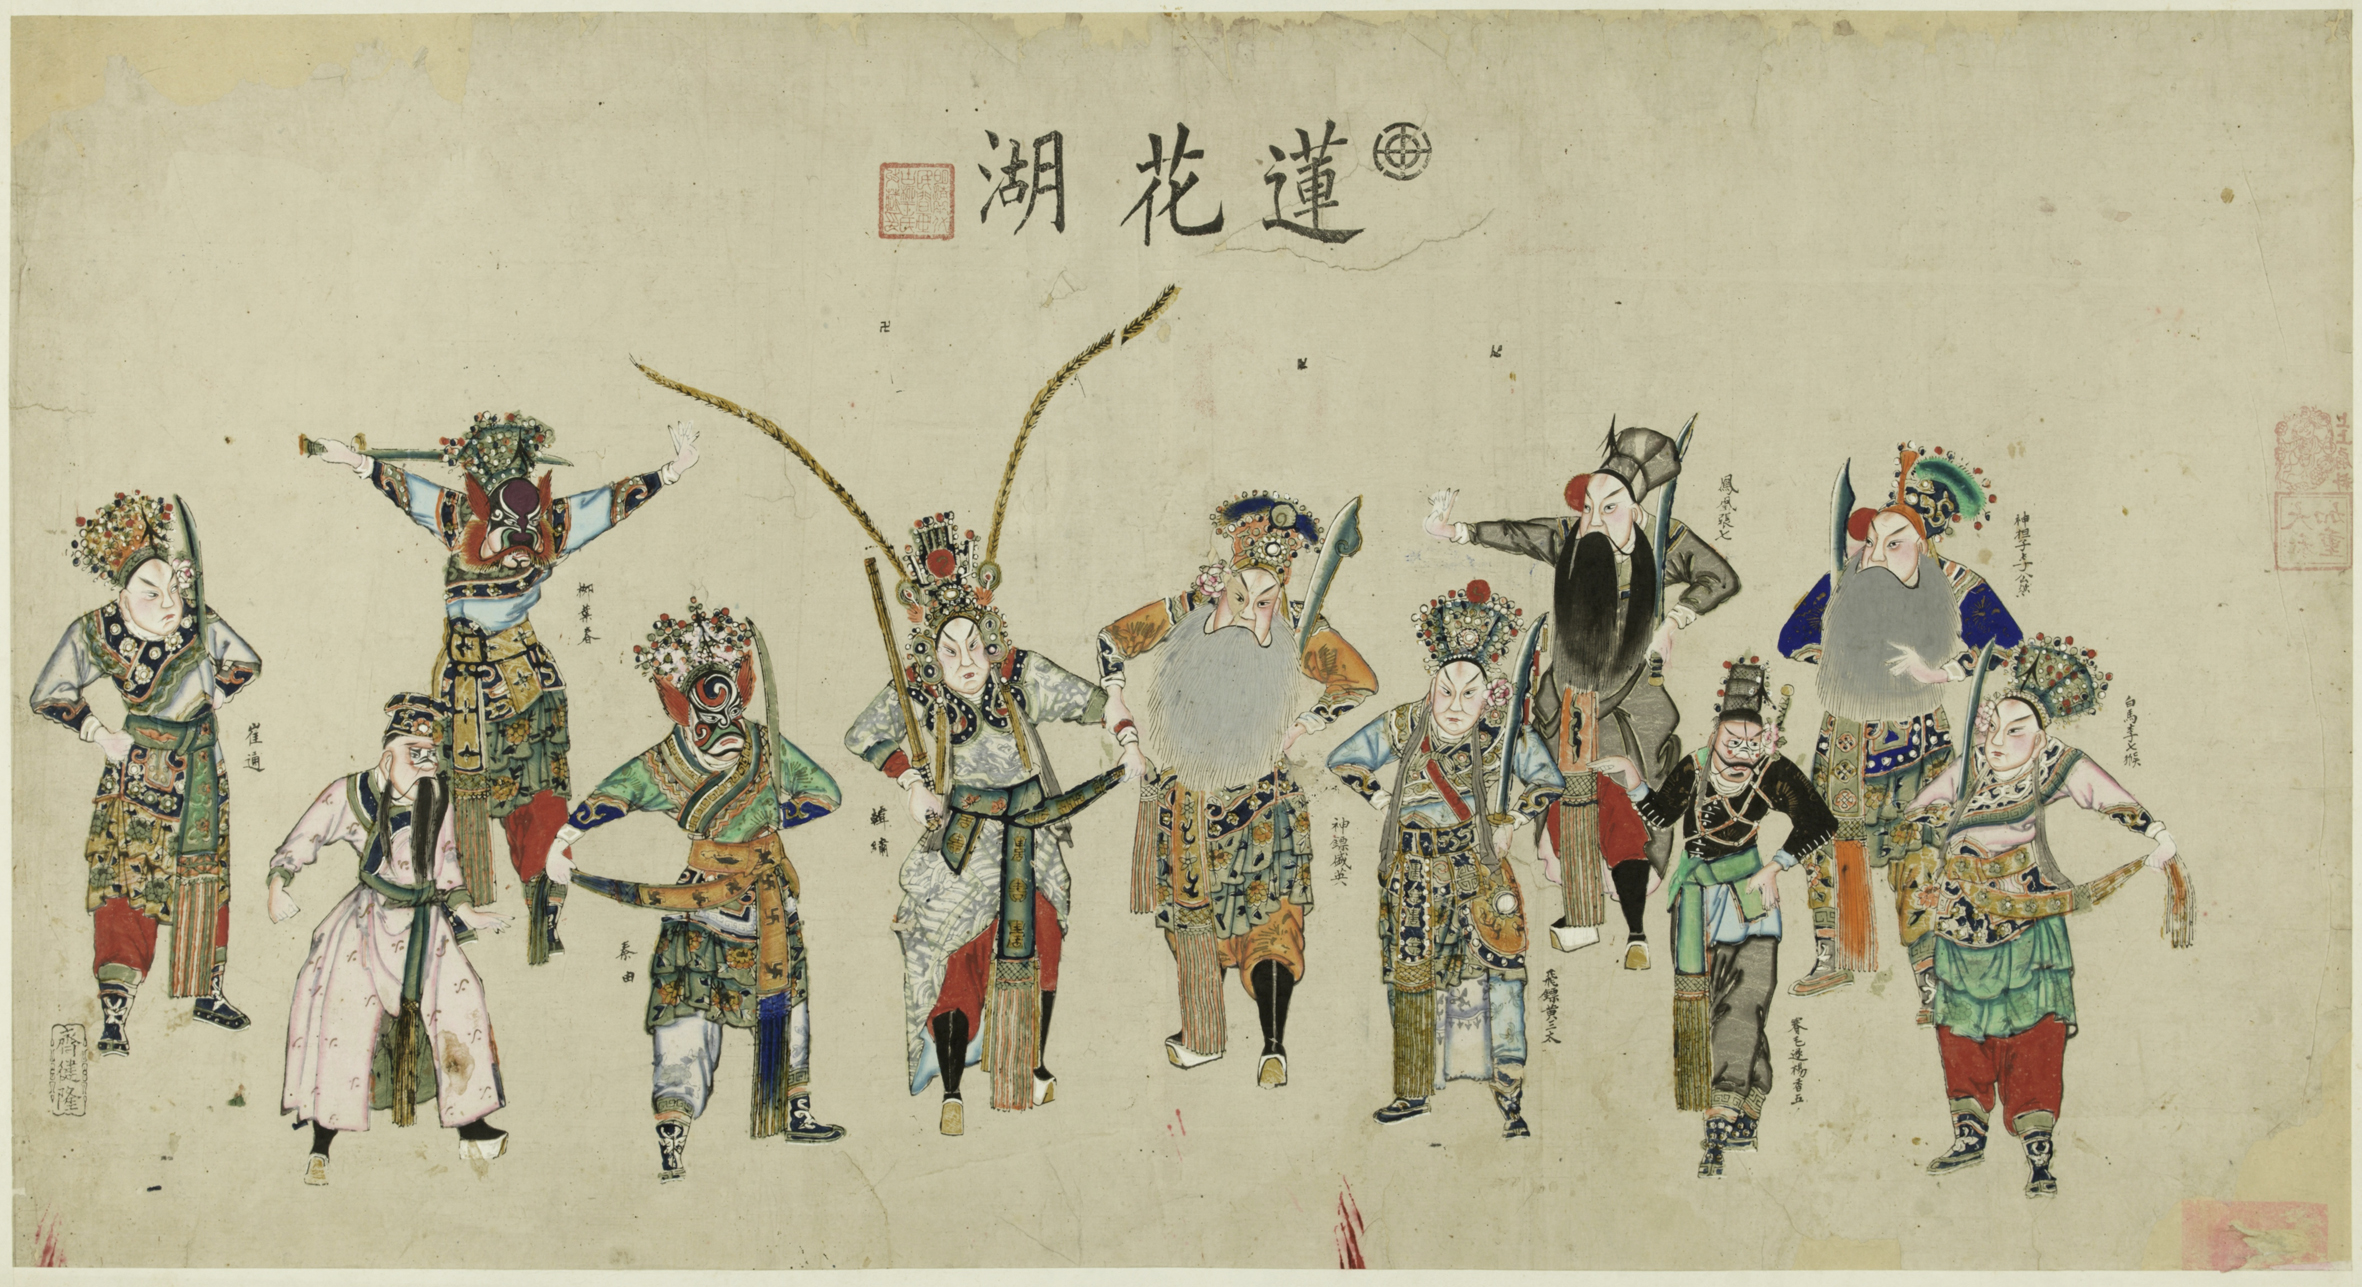 木版年画《莲花湖》 天津杨柳青 48.9cm×100cm 中国美术馆藏